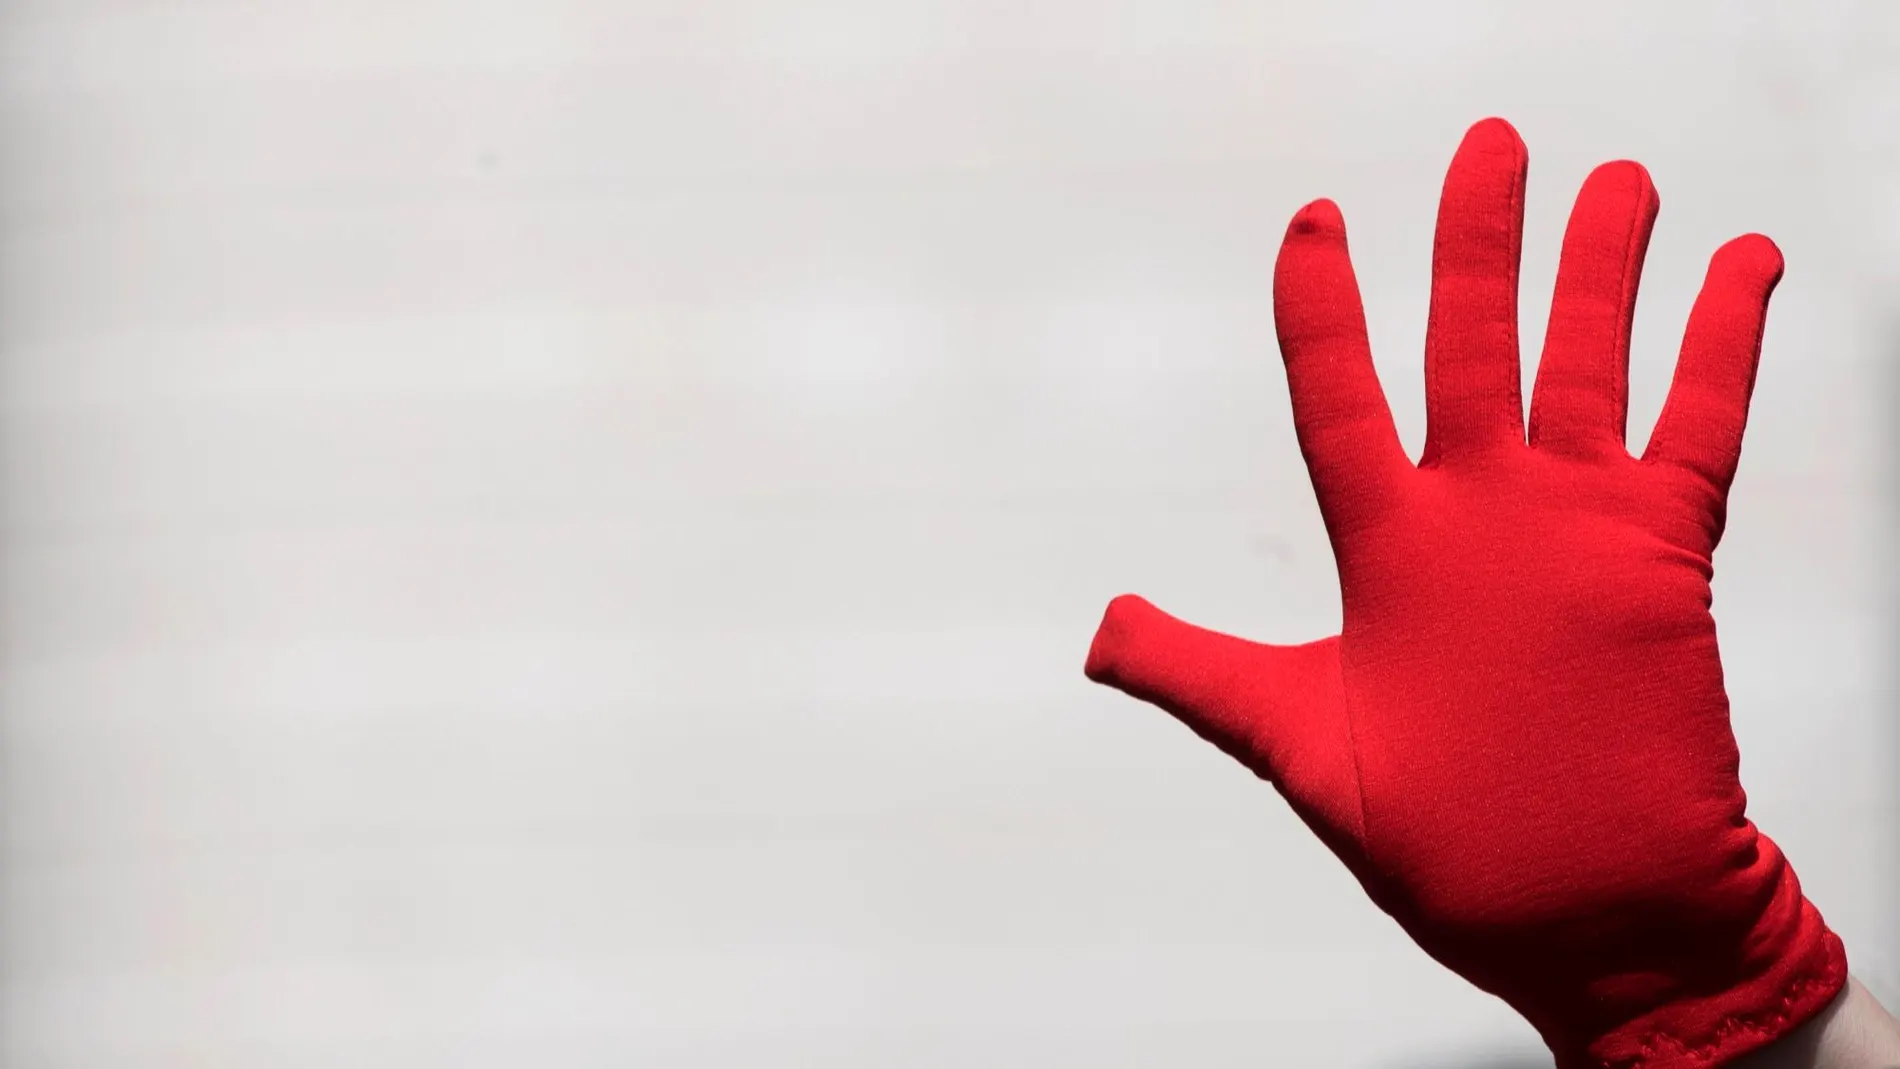 Manos rojas, símbolo contra las agresiones sexistas